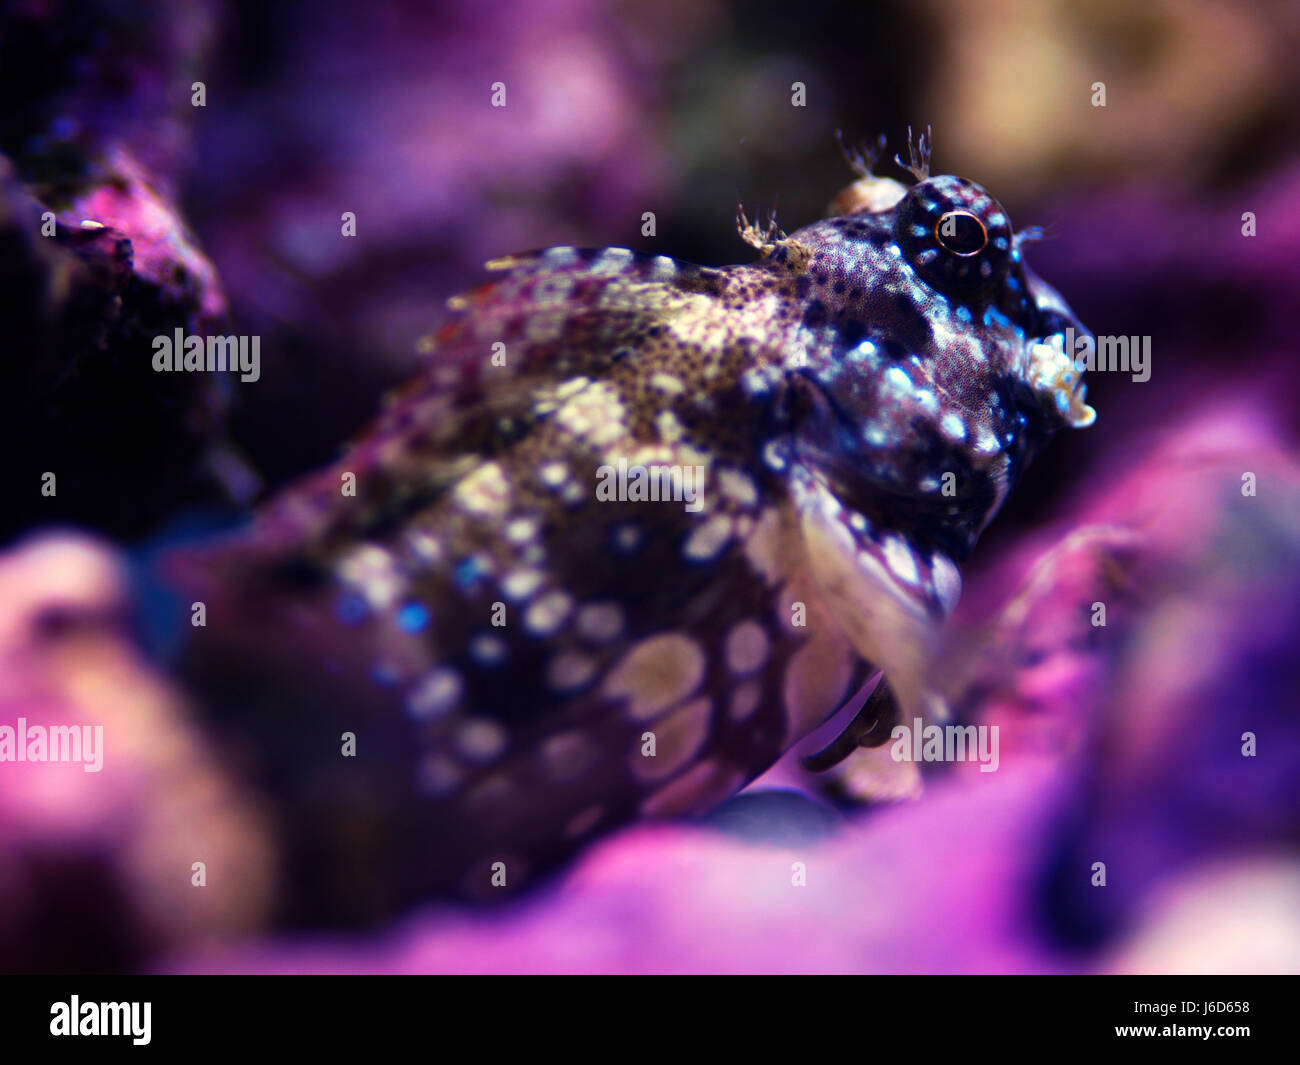 Paysage macro Close up shot d'un poisson ou d'algues marines tondeuse blennies blennies perché sur certains rock (Salarias fasciatus) Banque D'Images